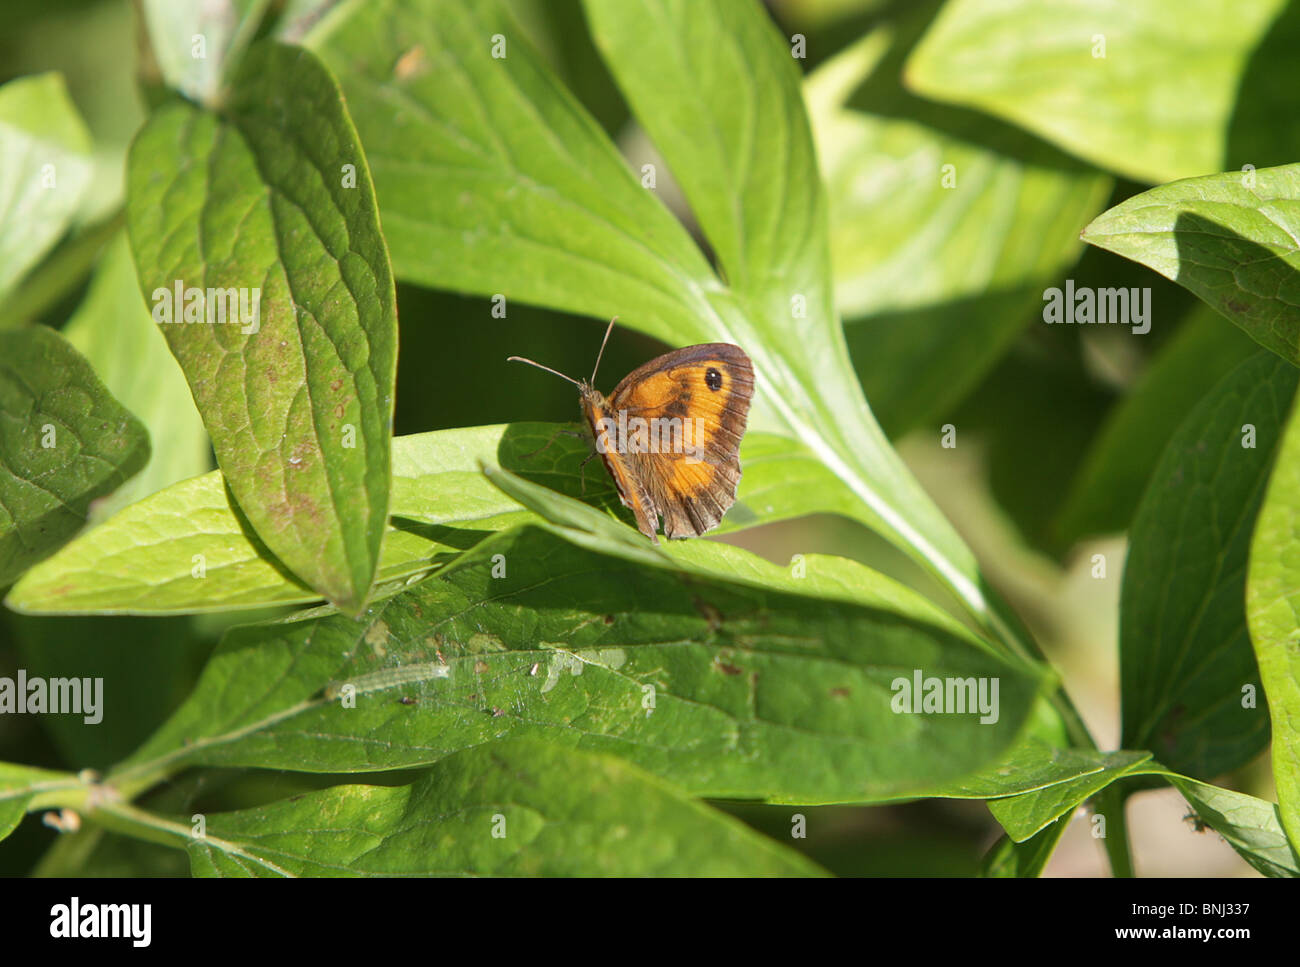 Gatekeeper también conocido como mariposas la mariposa común o hedge brown, tomada en Inglaterra. Foto de stock